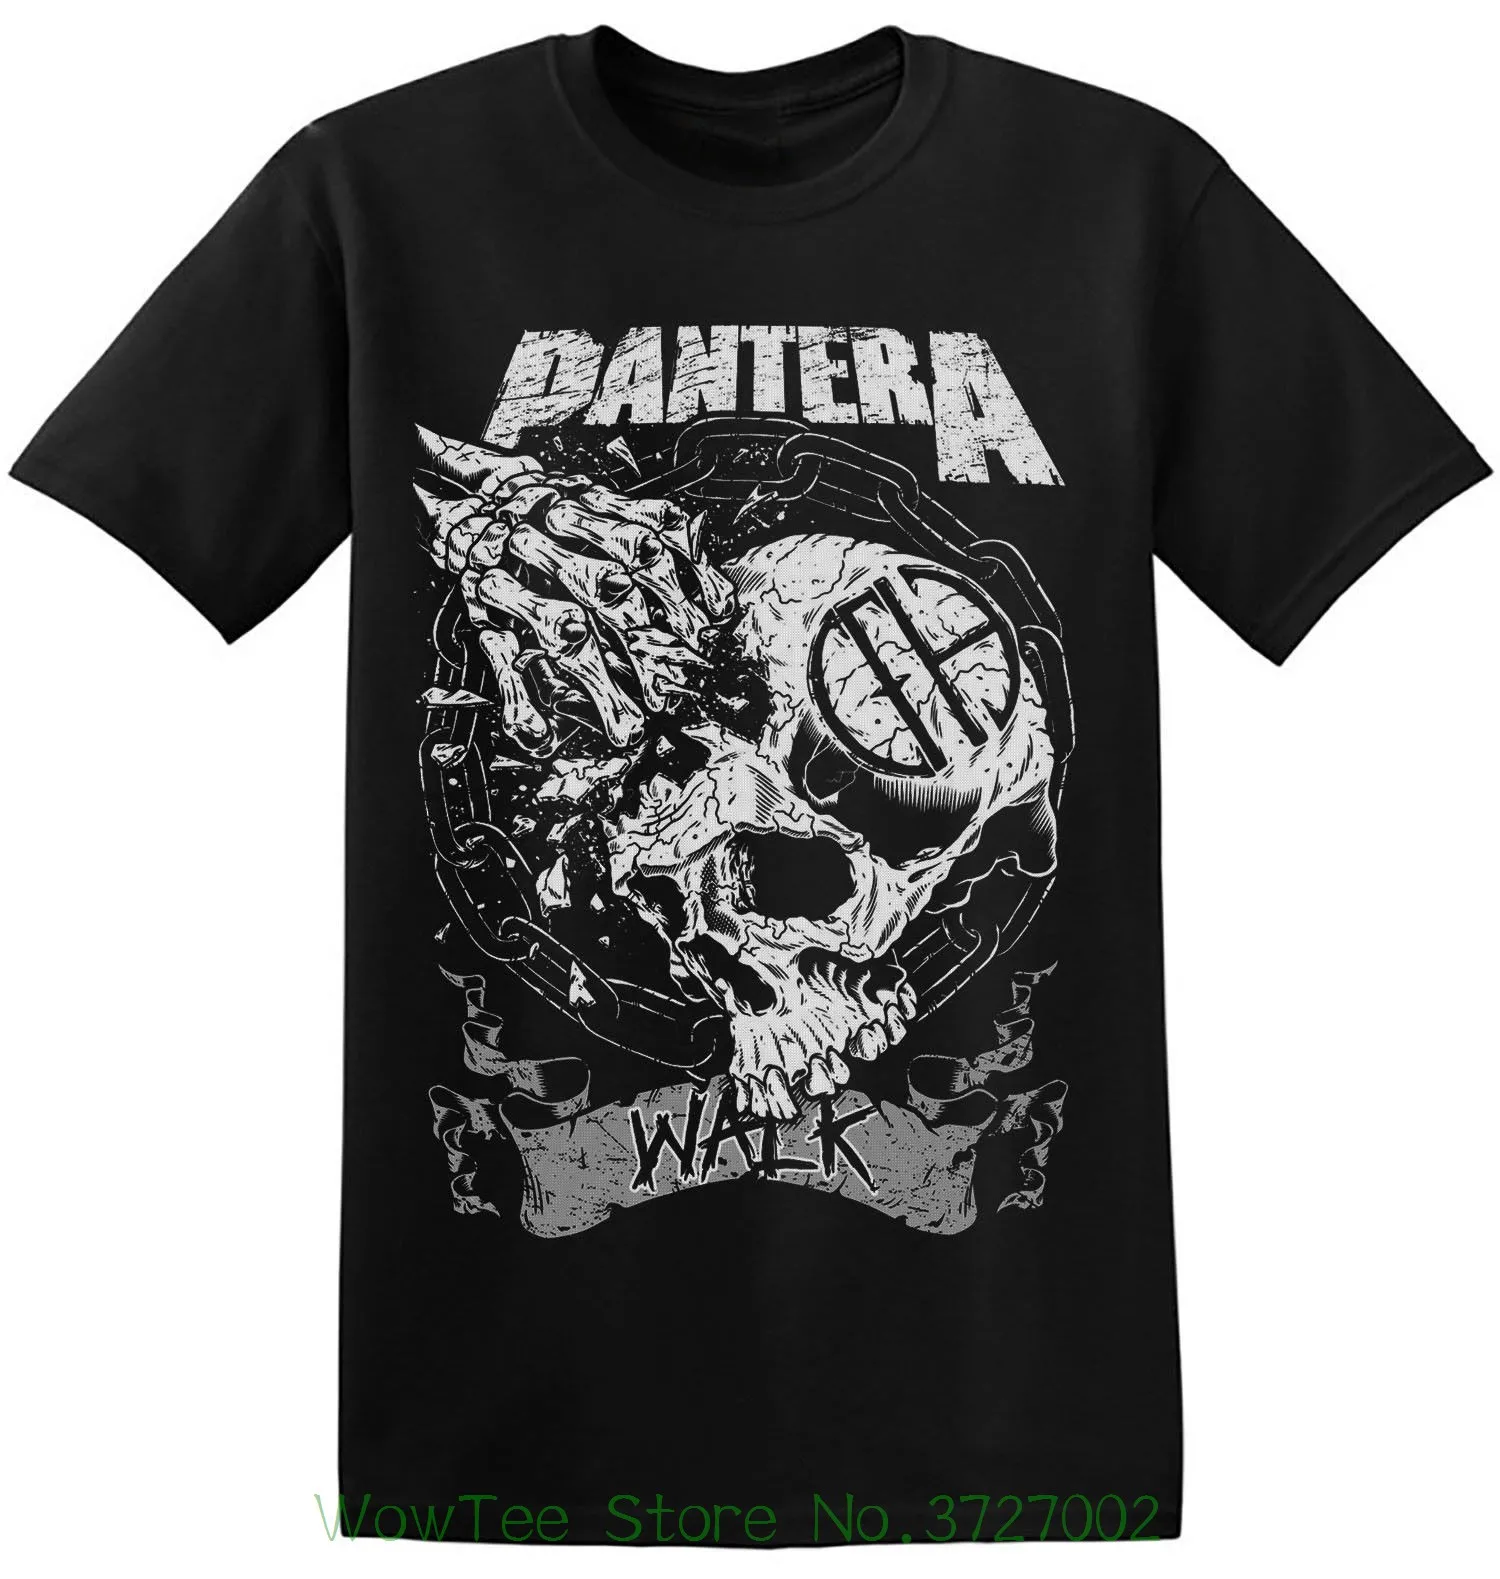 Футболка Pantera с черным графическим принтом футболки рок-группой из тяжелого